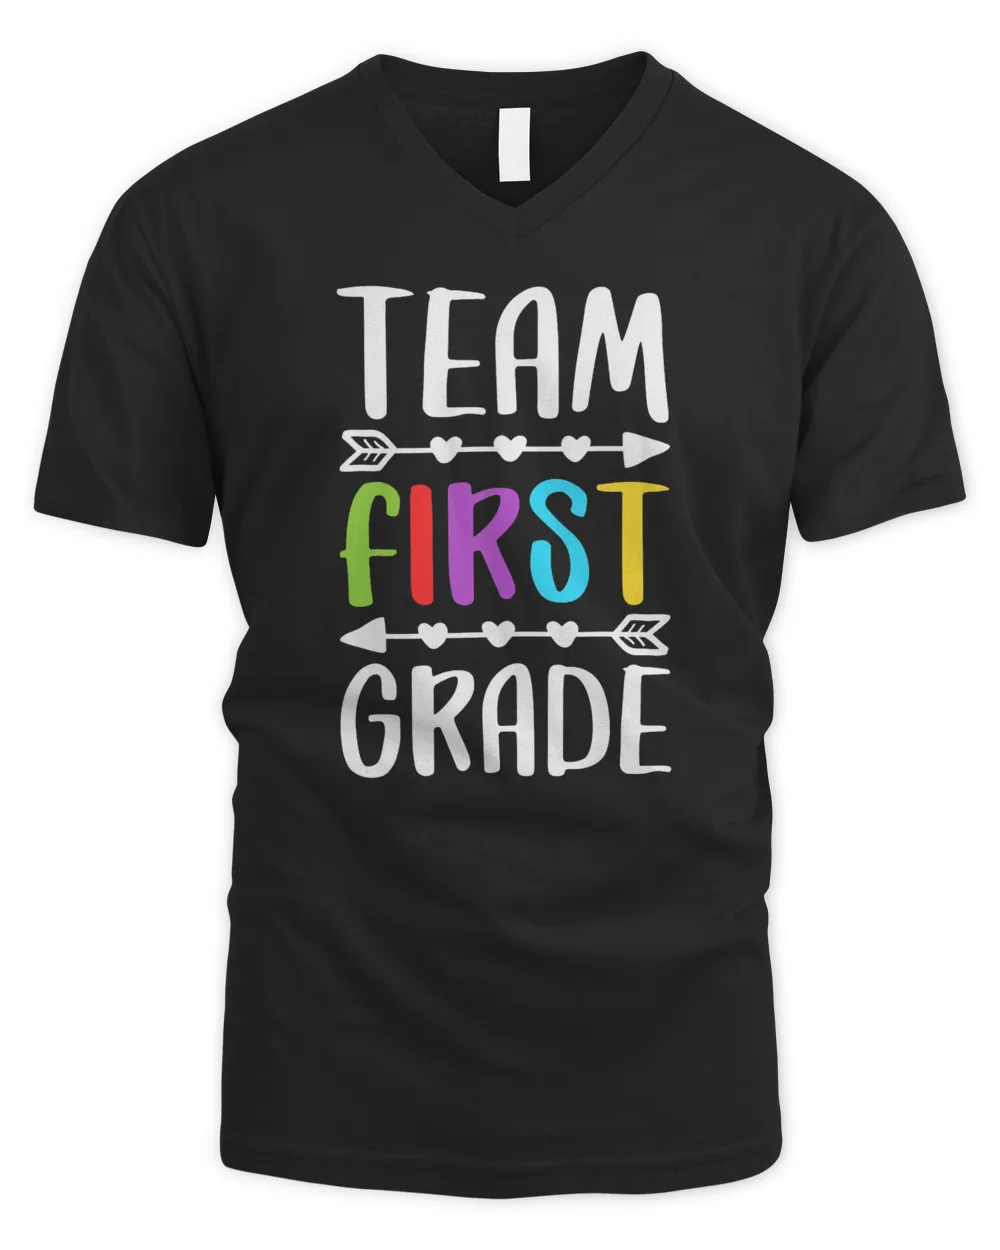 Team First Grade T-Shirt 1st Grade Teacher Student